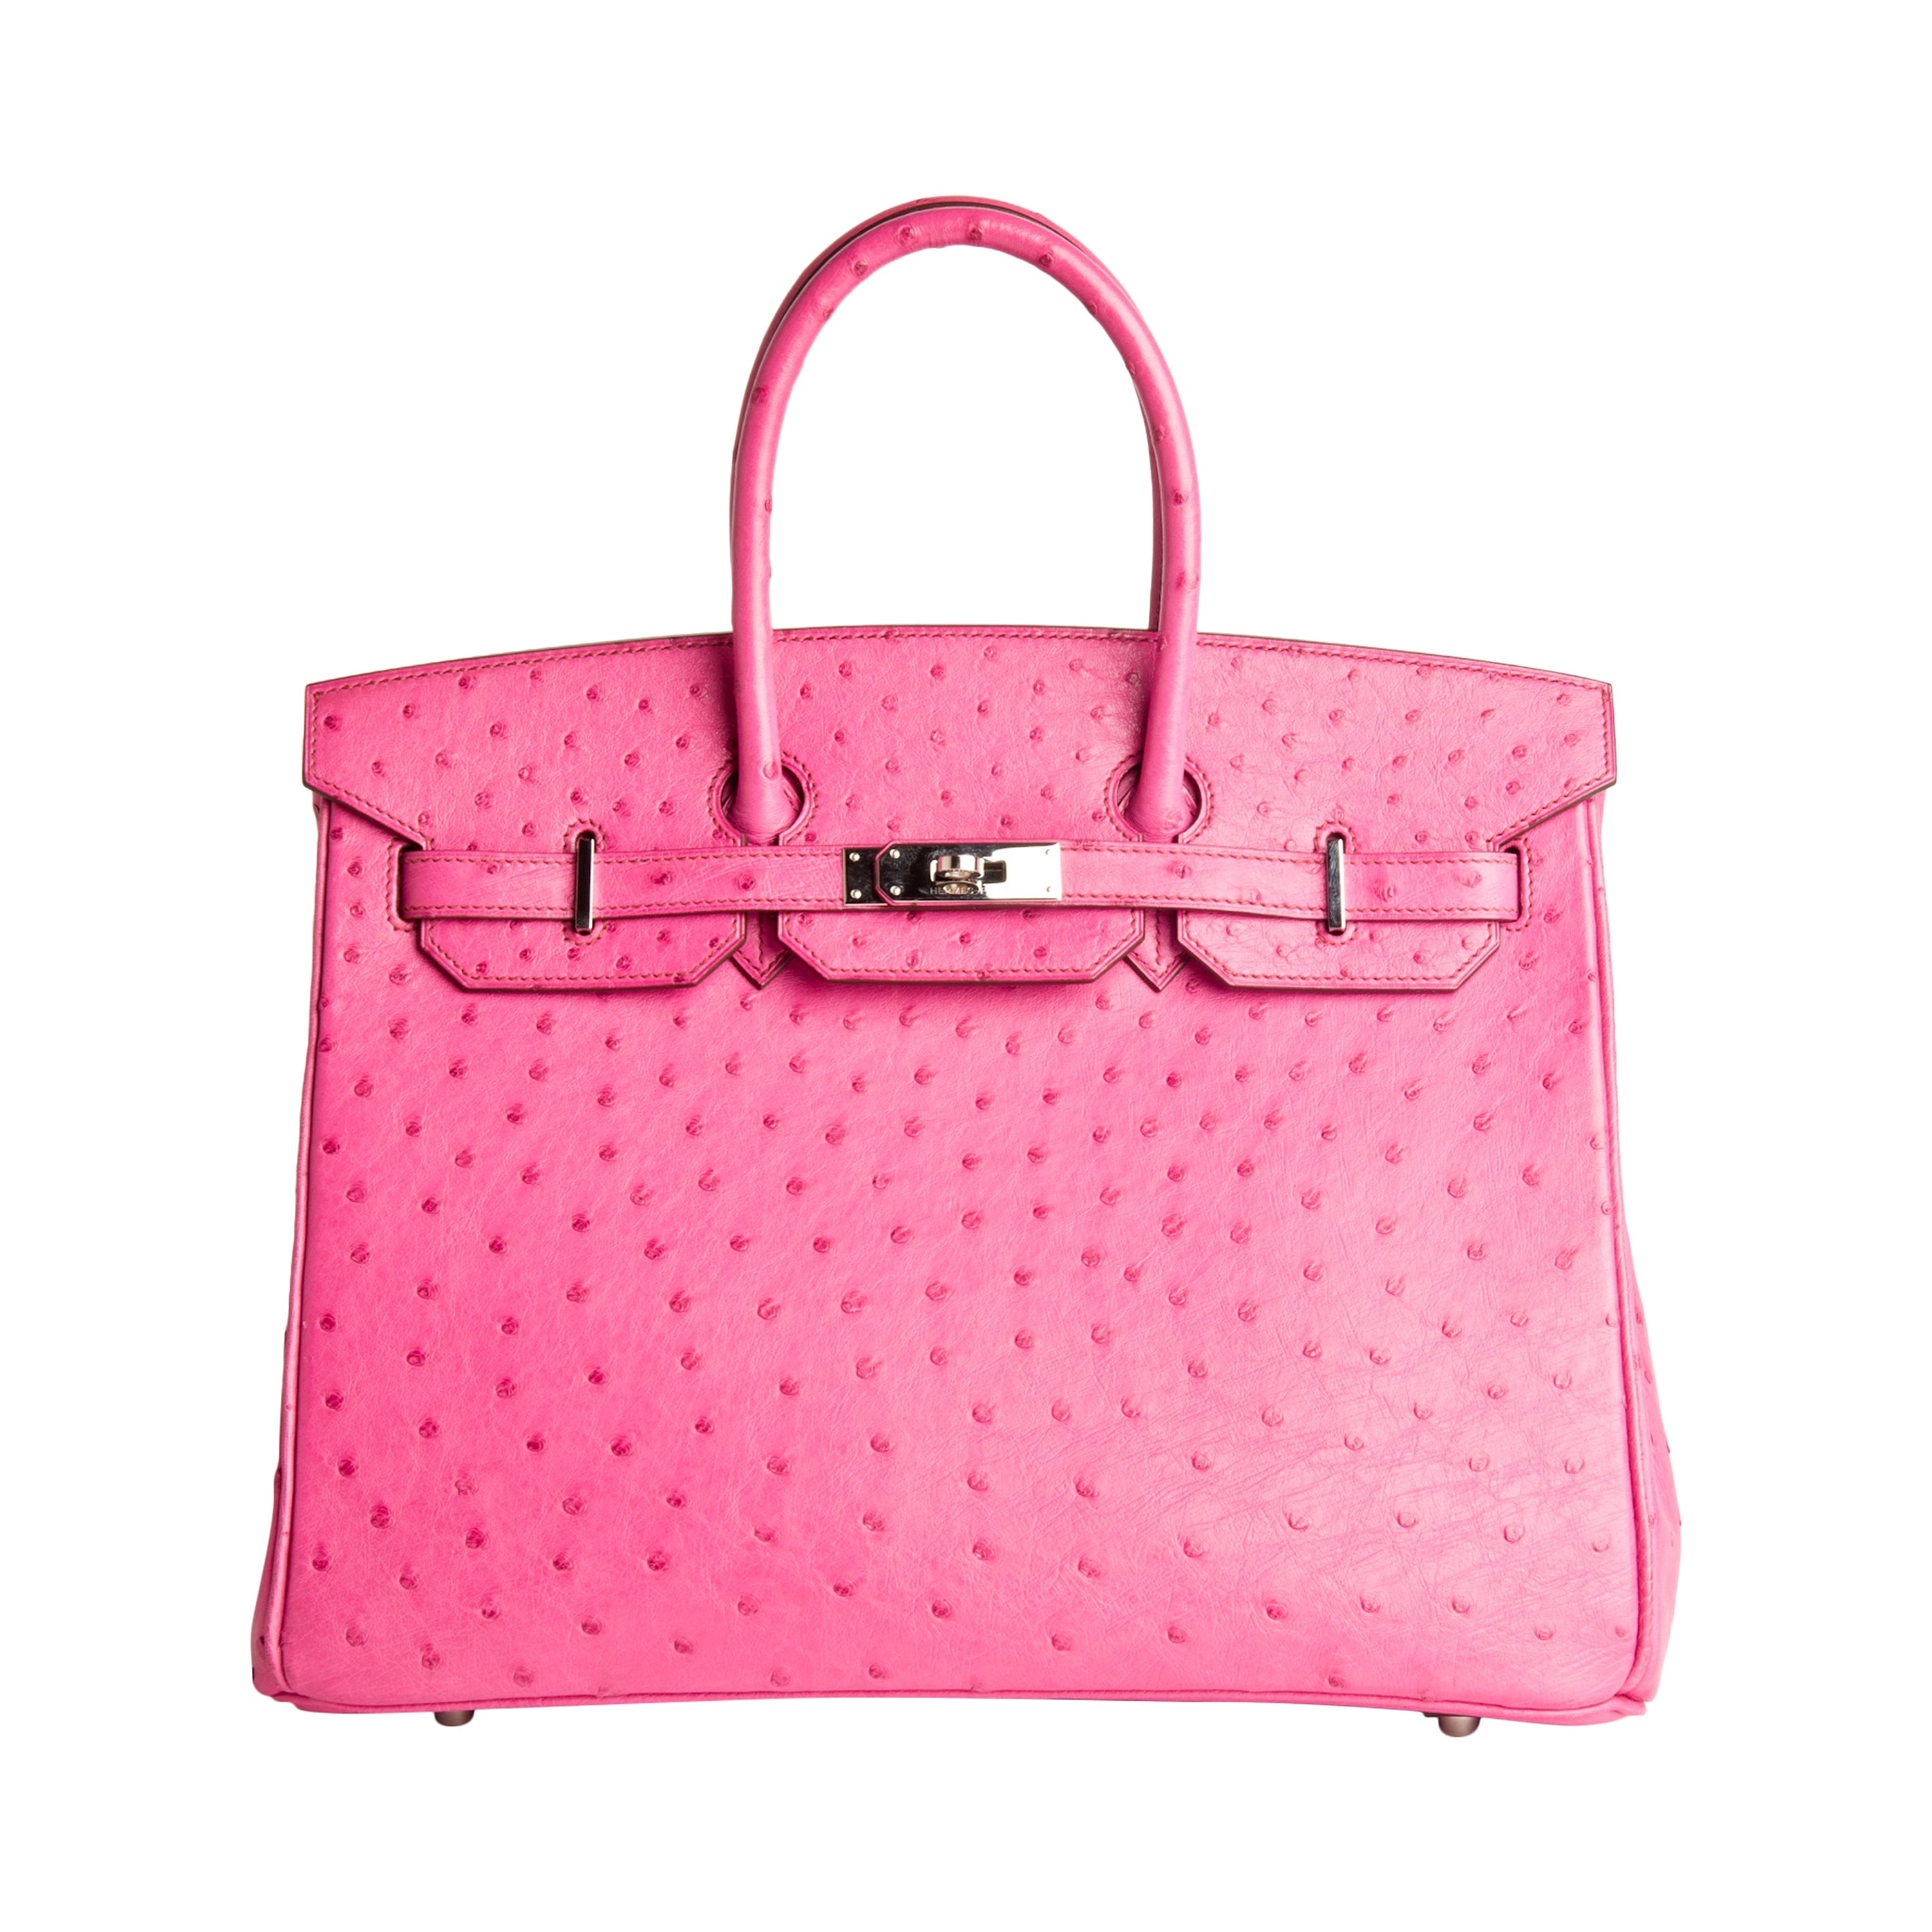 Hermes Pink Ostrich Leather Trim 23 Bag – I MISS YOU VINTAGE